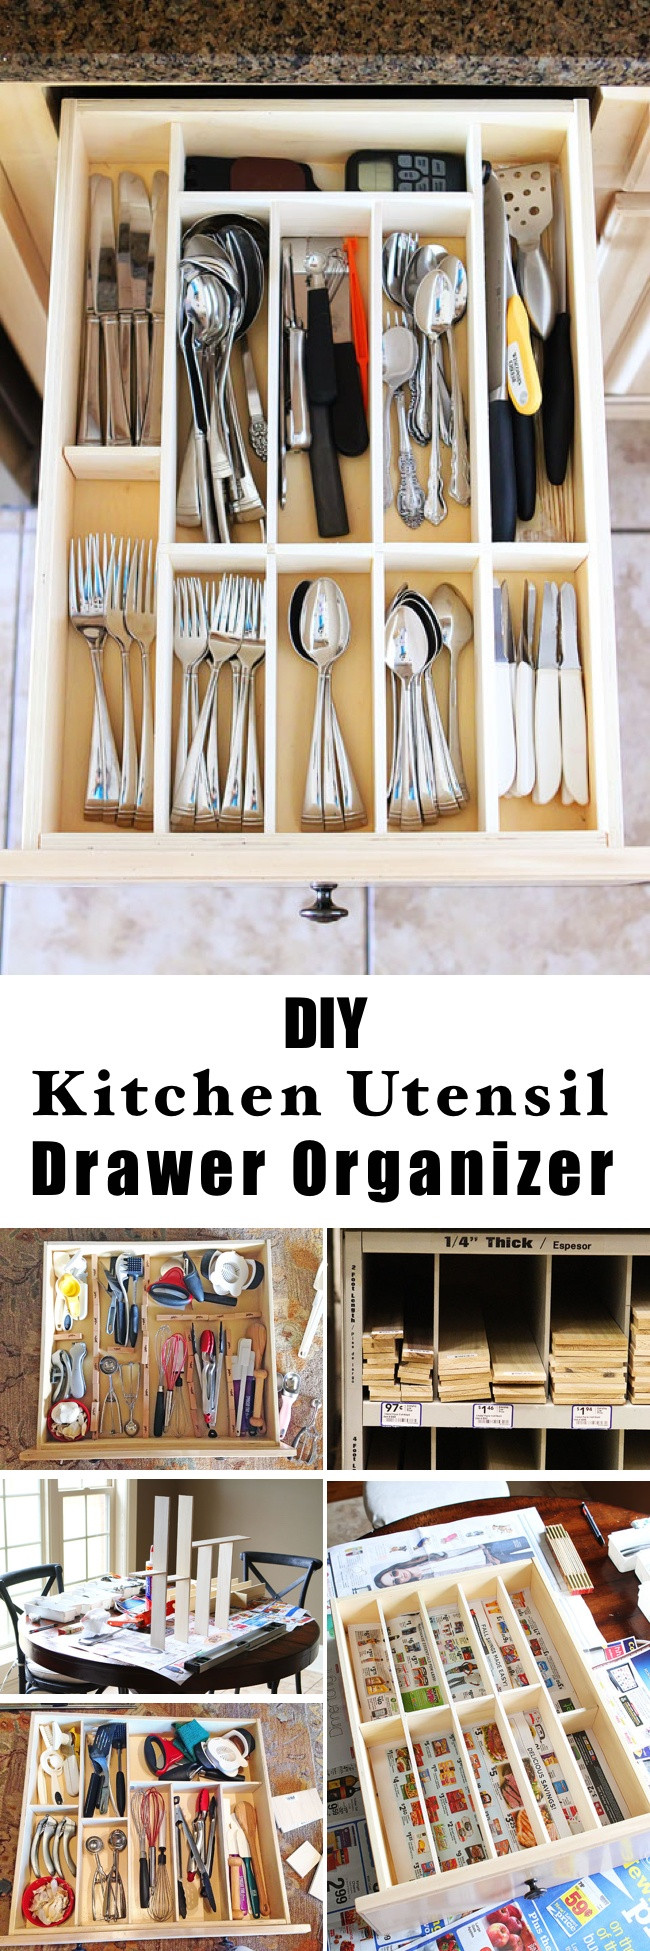 Best ideas about DIY Utensil Organizer
. Save or Pin 15 Innovative DIY Kitchen Organization & Storage Ideas Now.